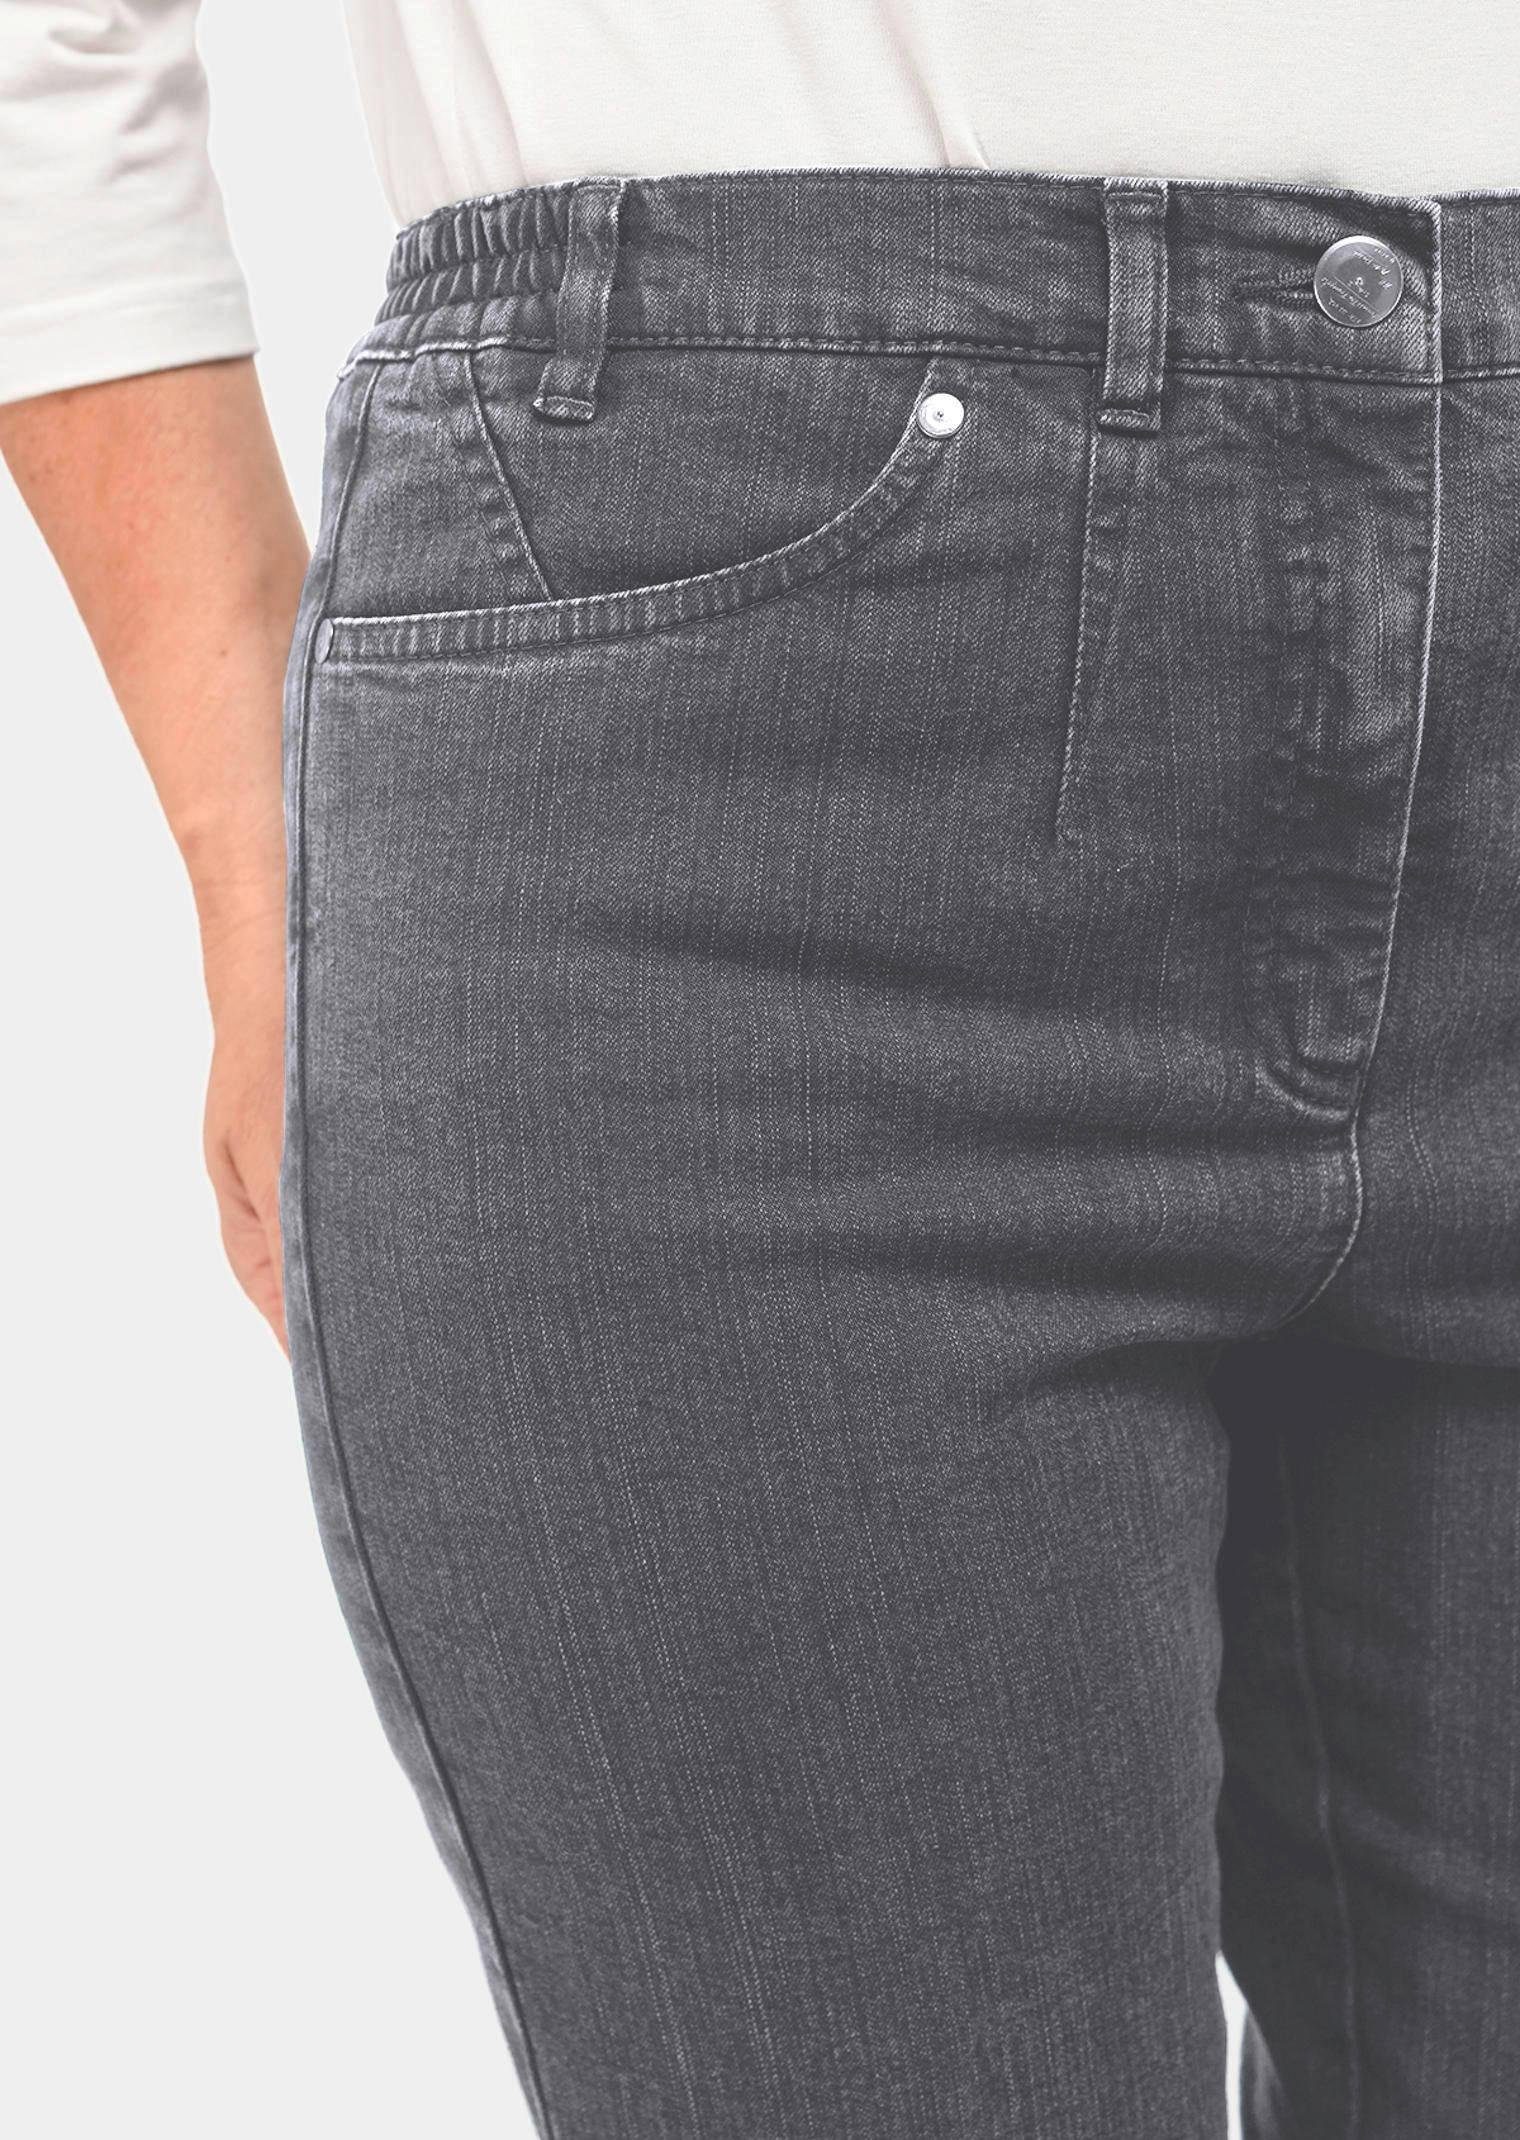 GOLDNER Bequeme Jeans Kurzgröße: Schlichte Jeanshose dunkelgrau ANNA